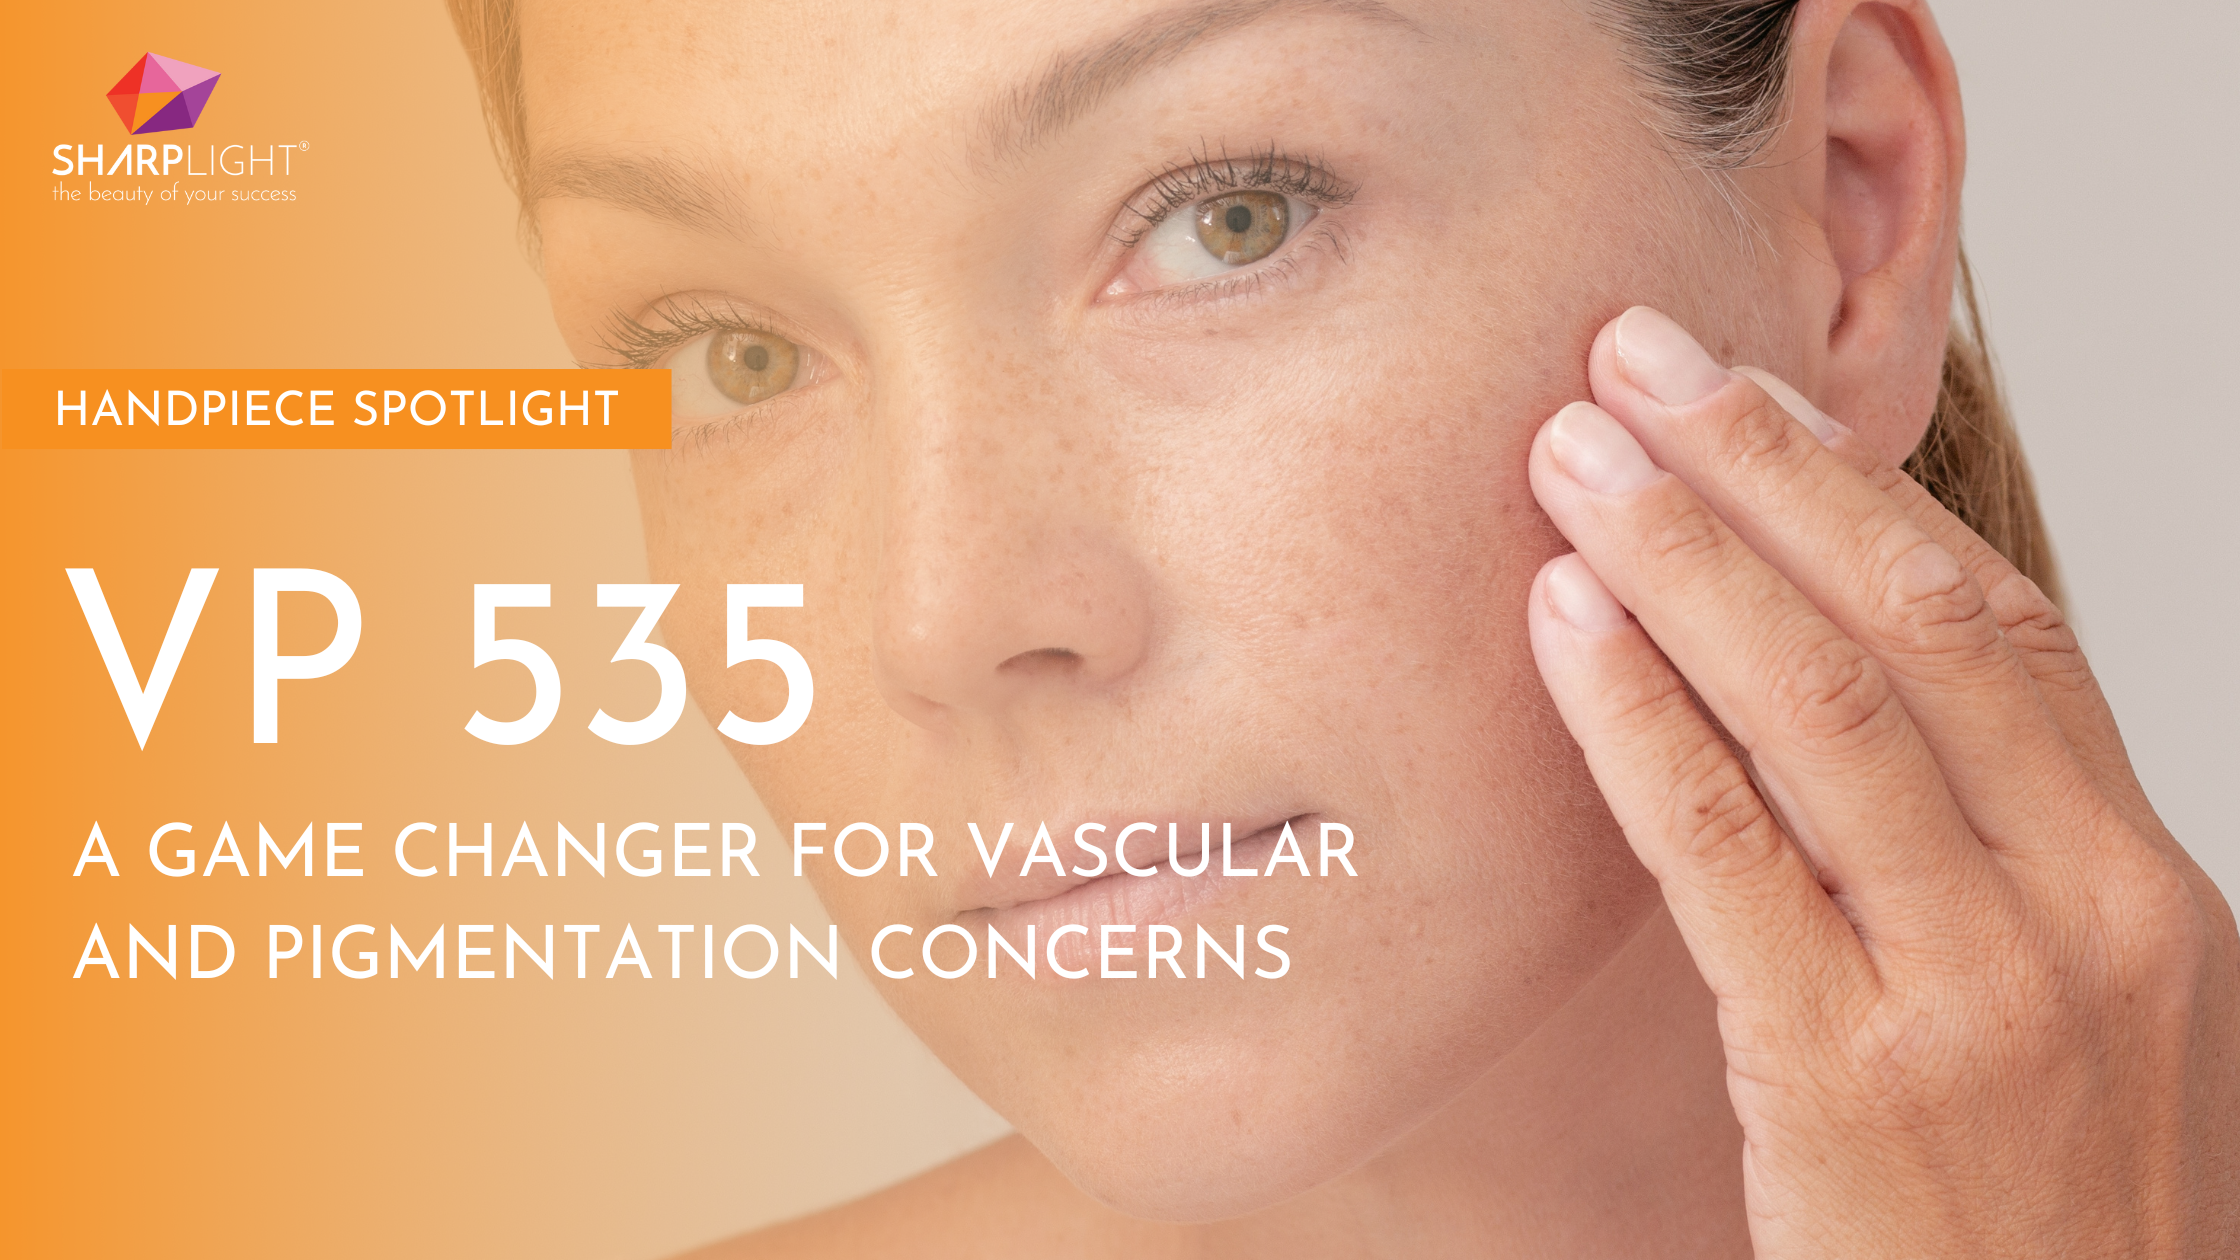 <H1>Handpiece SpotLight: VP 535 – A Game Changer for Vascular and Pigmentation Concerns</H1>